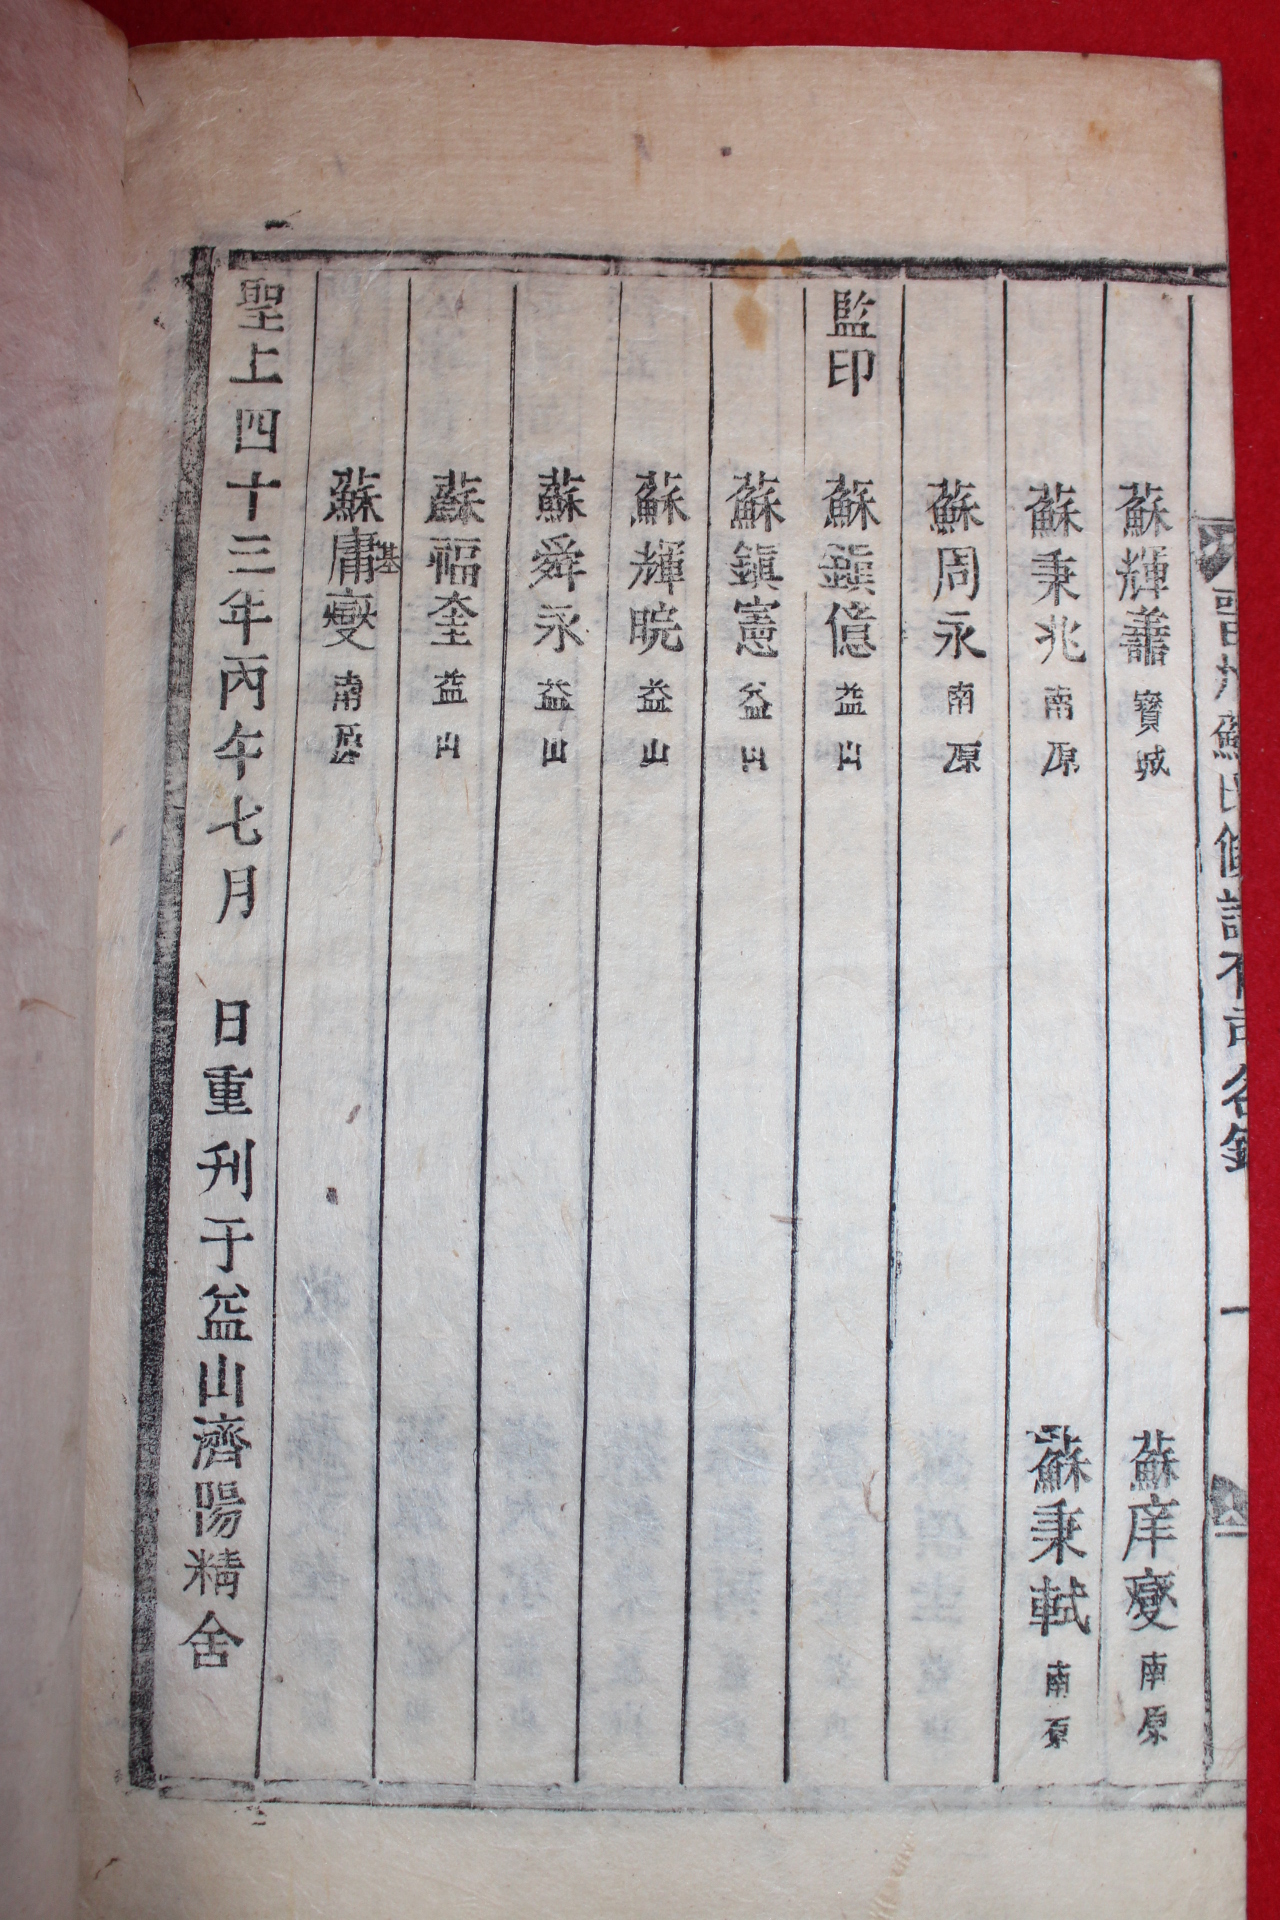 1906년 목활자본 진주소씨족보(晋州蘇氏族譜) 18권11책완질